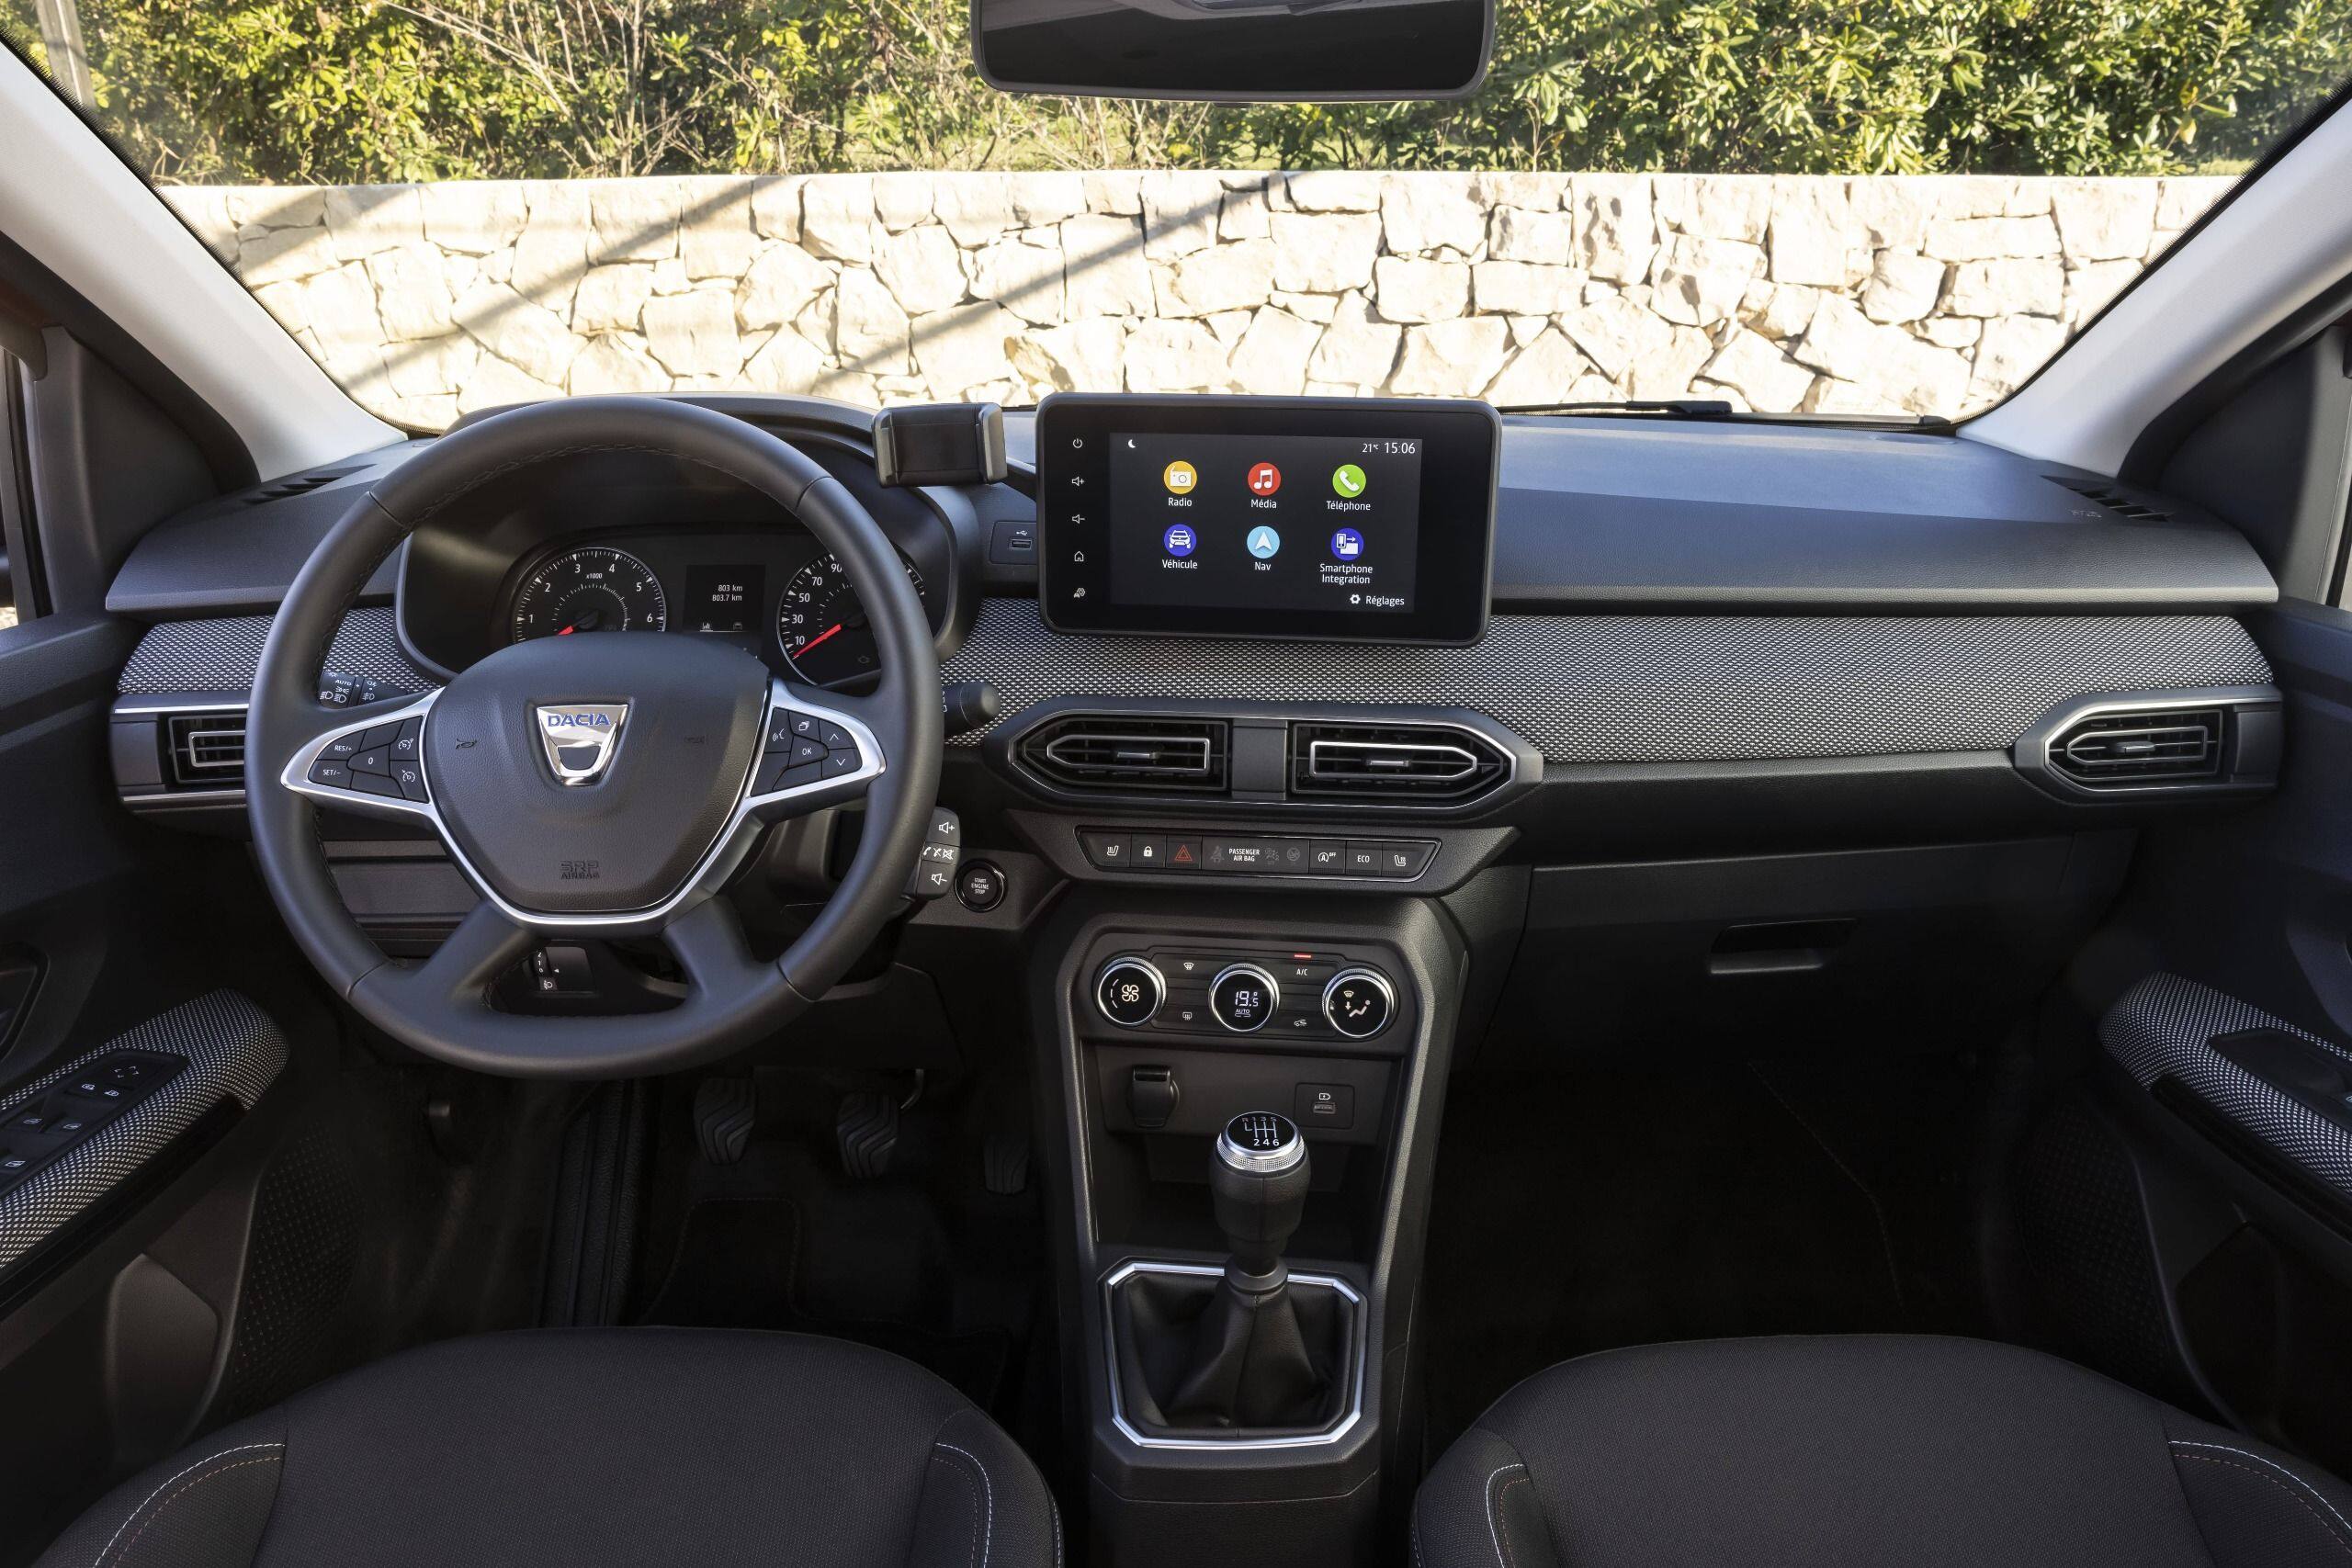 Essai vidéo - Dacia Sandero Stepway (2021) : chronique d'un succès annoncé